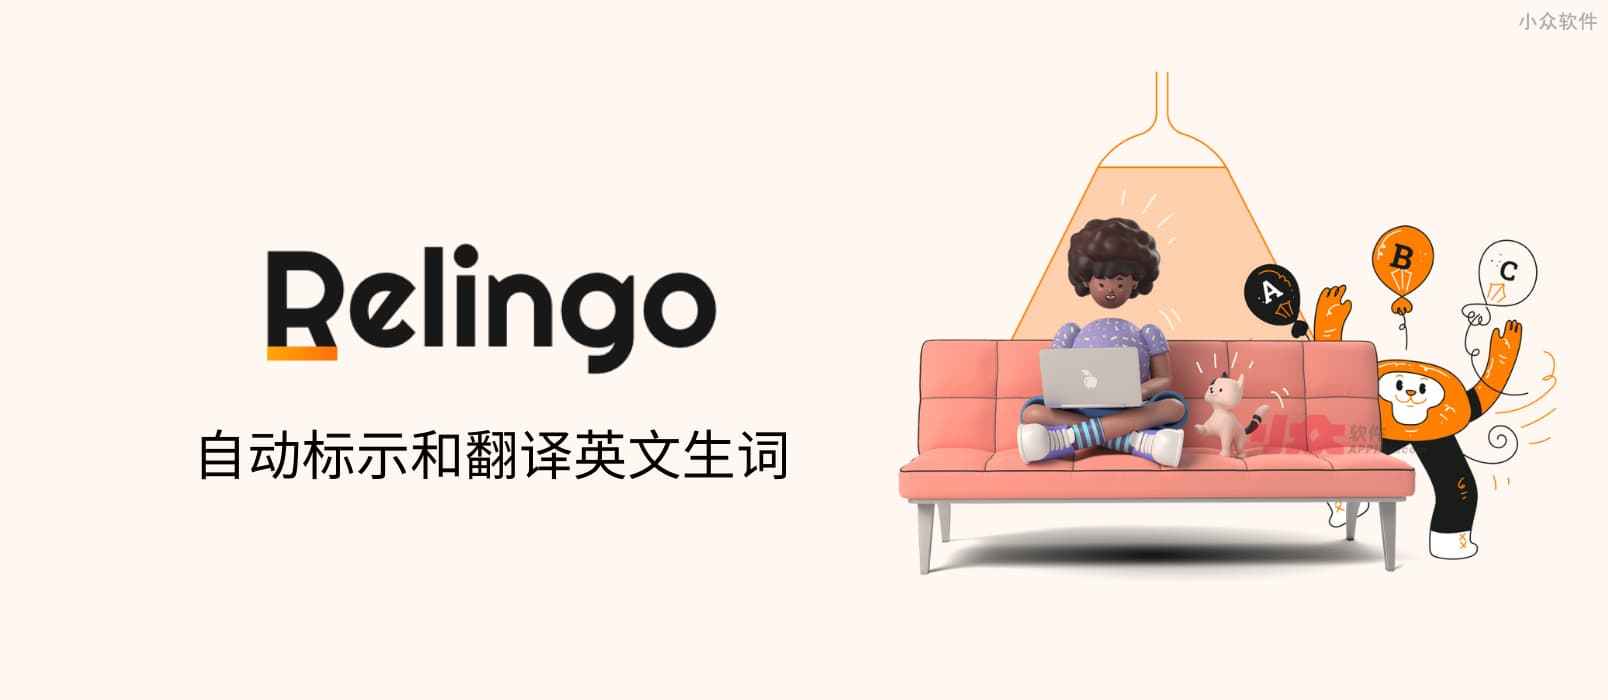 Relingo – 自动为文章与视频标示英文生词[Chrome]